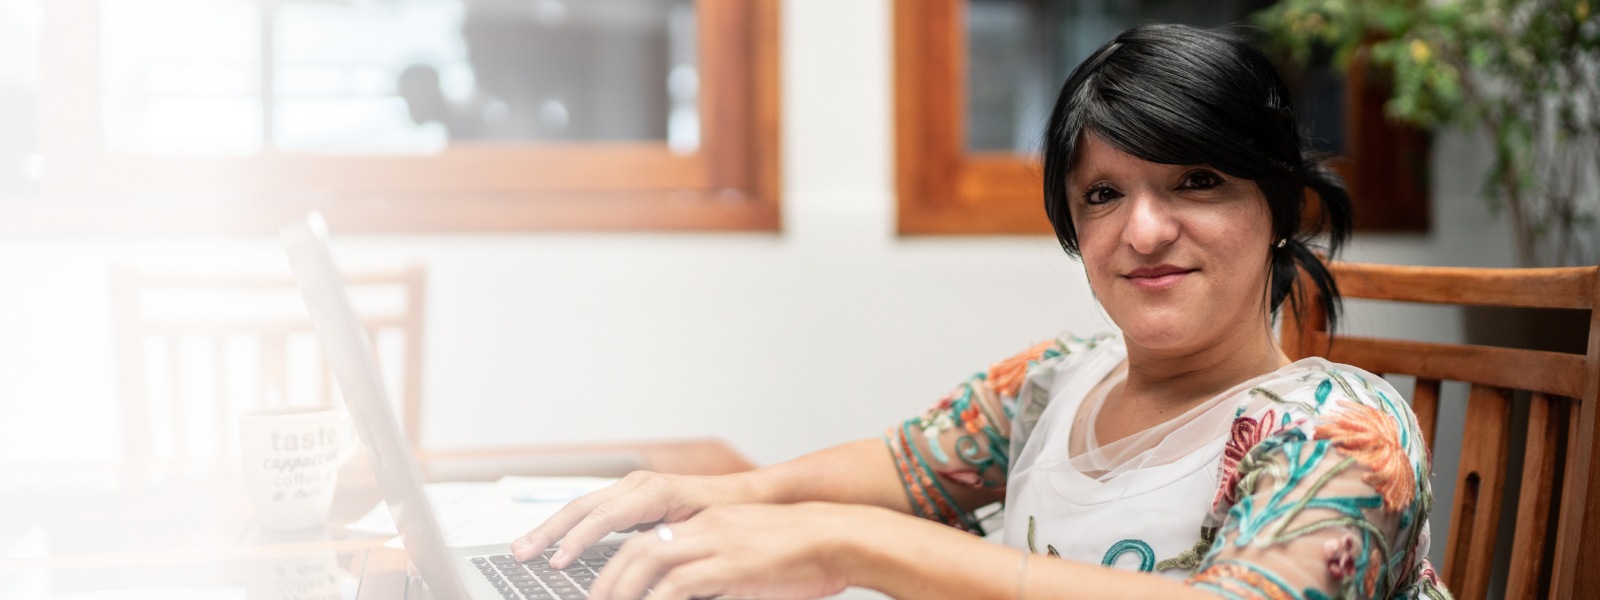 Une femme travaillant chez elle en utilisant un ordinateur portable